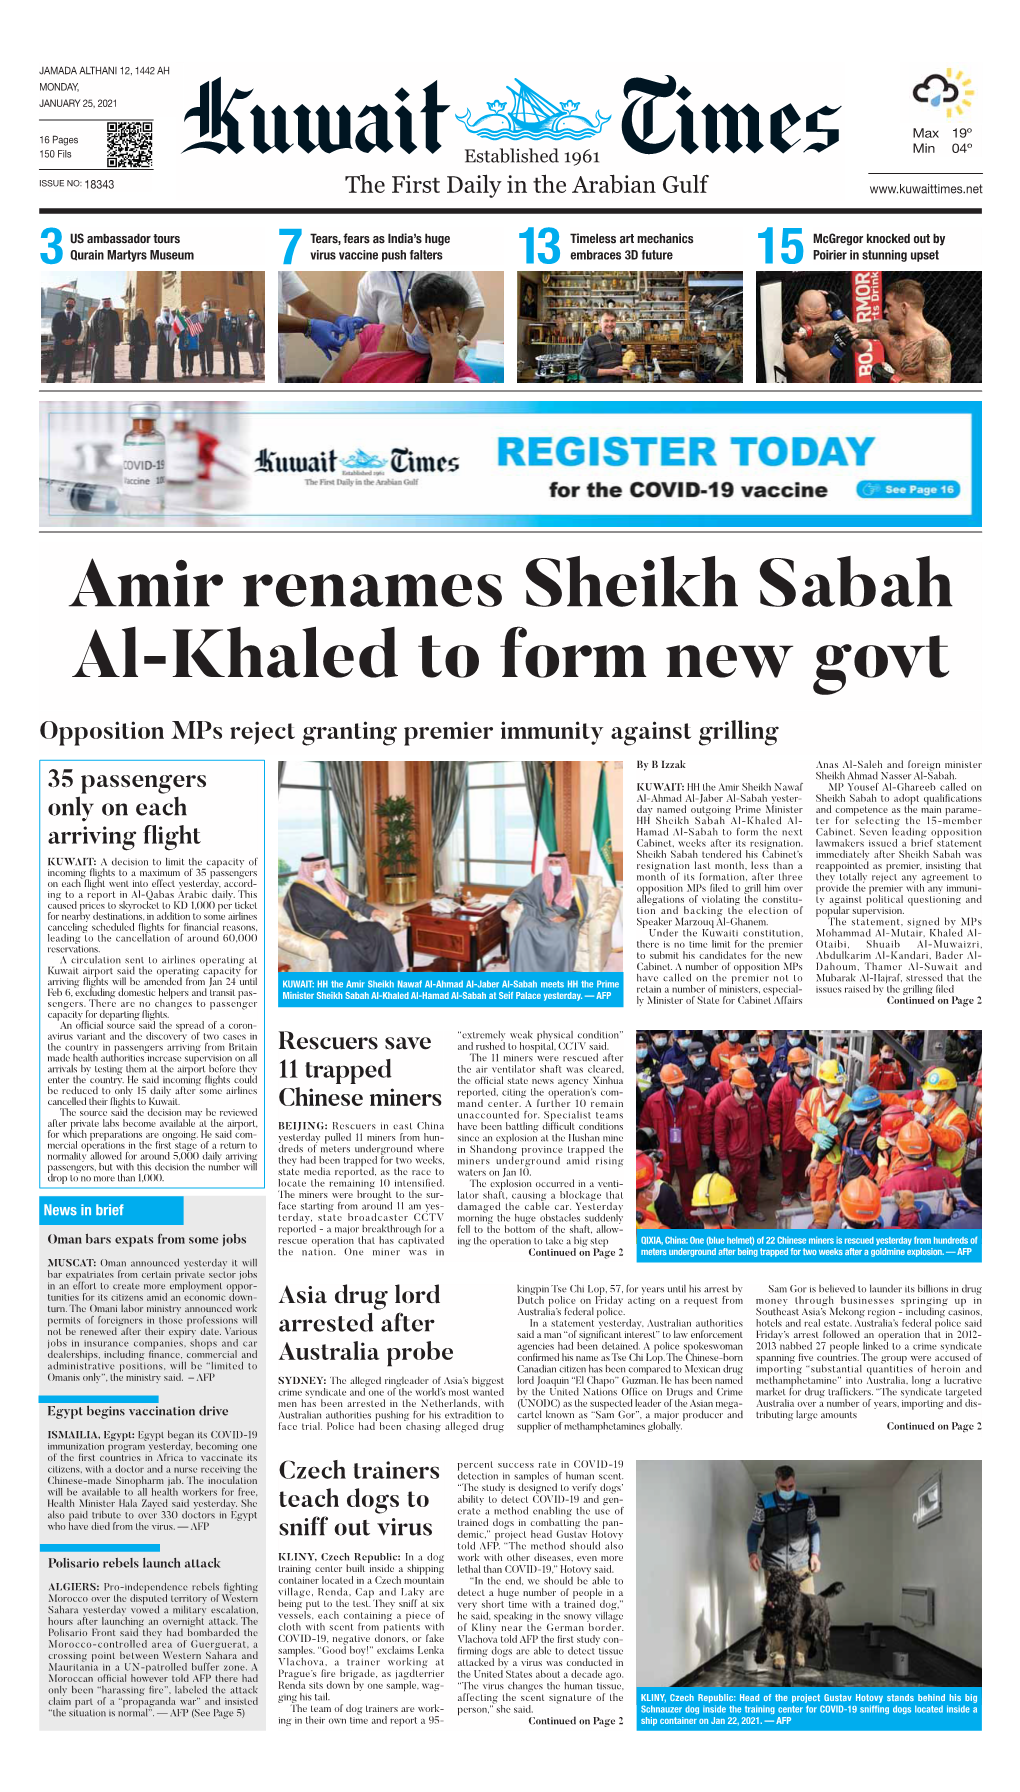 Amir Renames Sheikh Sabah Al-Khaled to Form New Govt Opposition Mps Reject Granting Premier Immunity Against Grilling